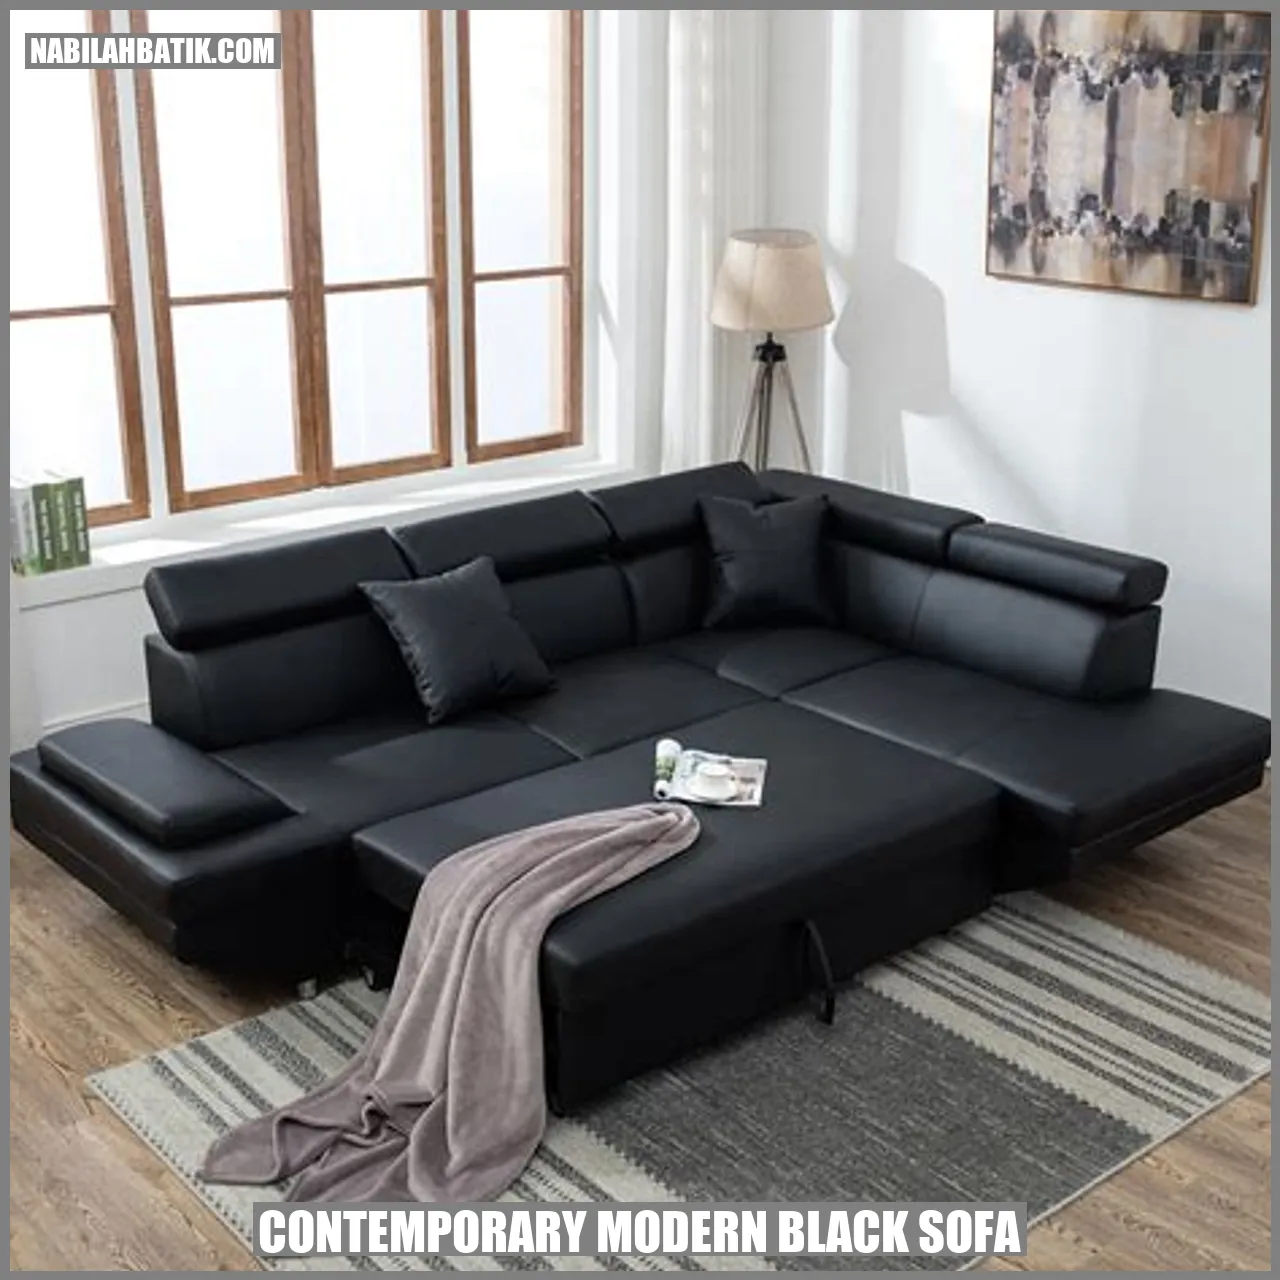 Contemporary Modern Black Sofa